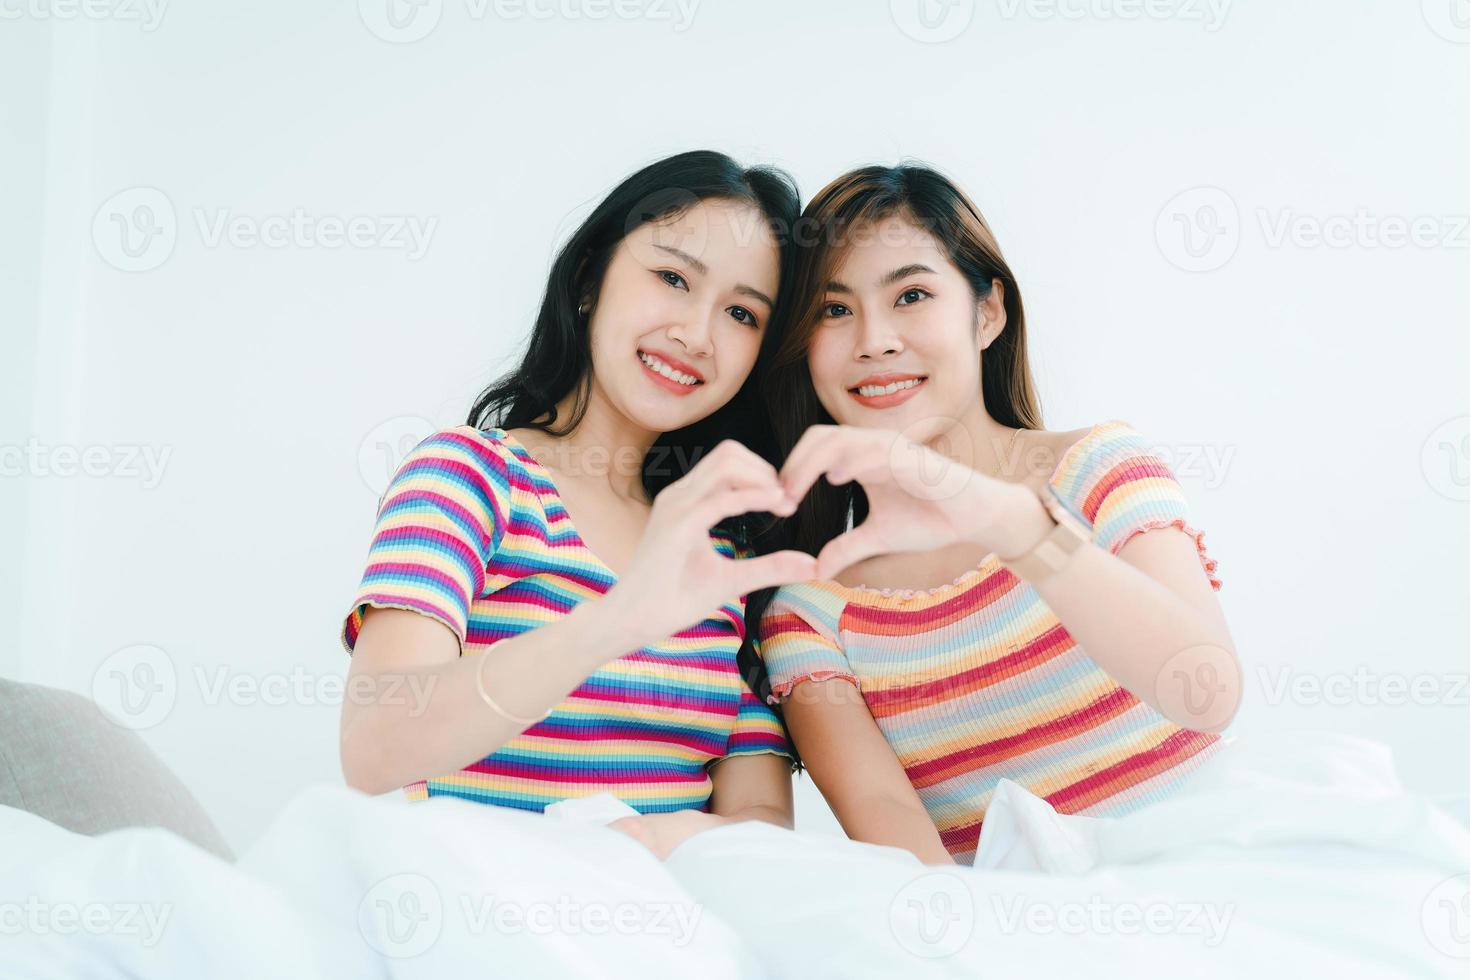 lgbtq, concept lgbt, homosexualité, portrait de deux femmes asiatiques posant heureuses ensemble et montrant de l'amour l'une pour l'autre tout en étant ensemble photo